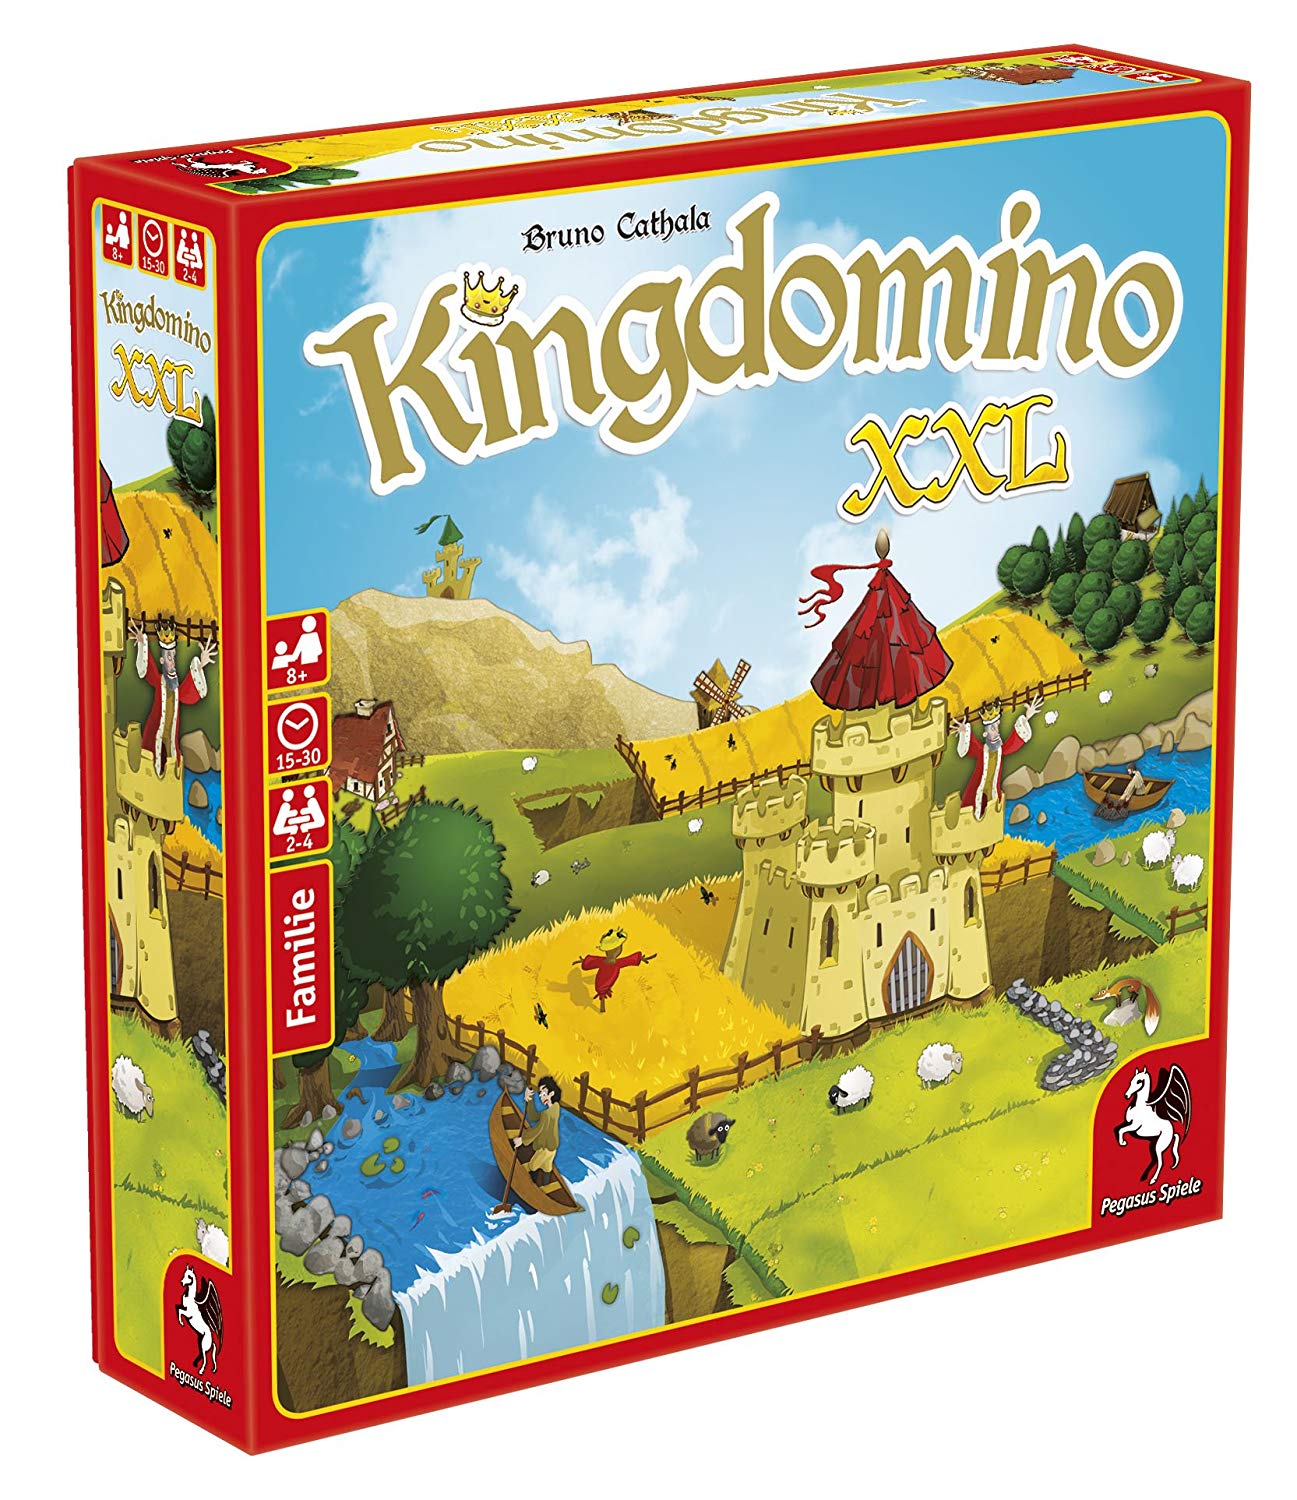 Pegasus Spiele G King Domino Xxl